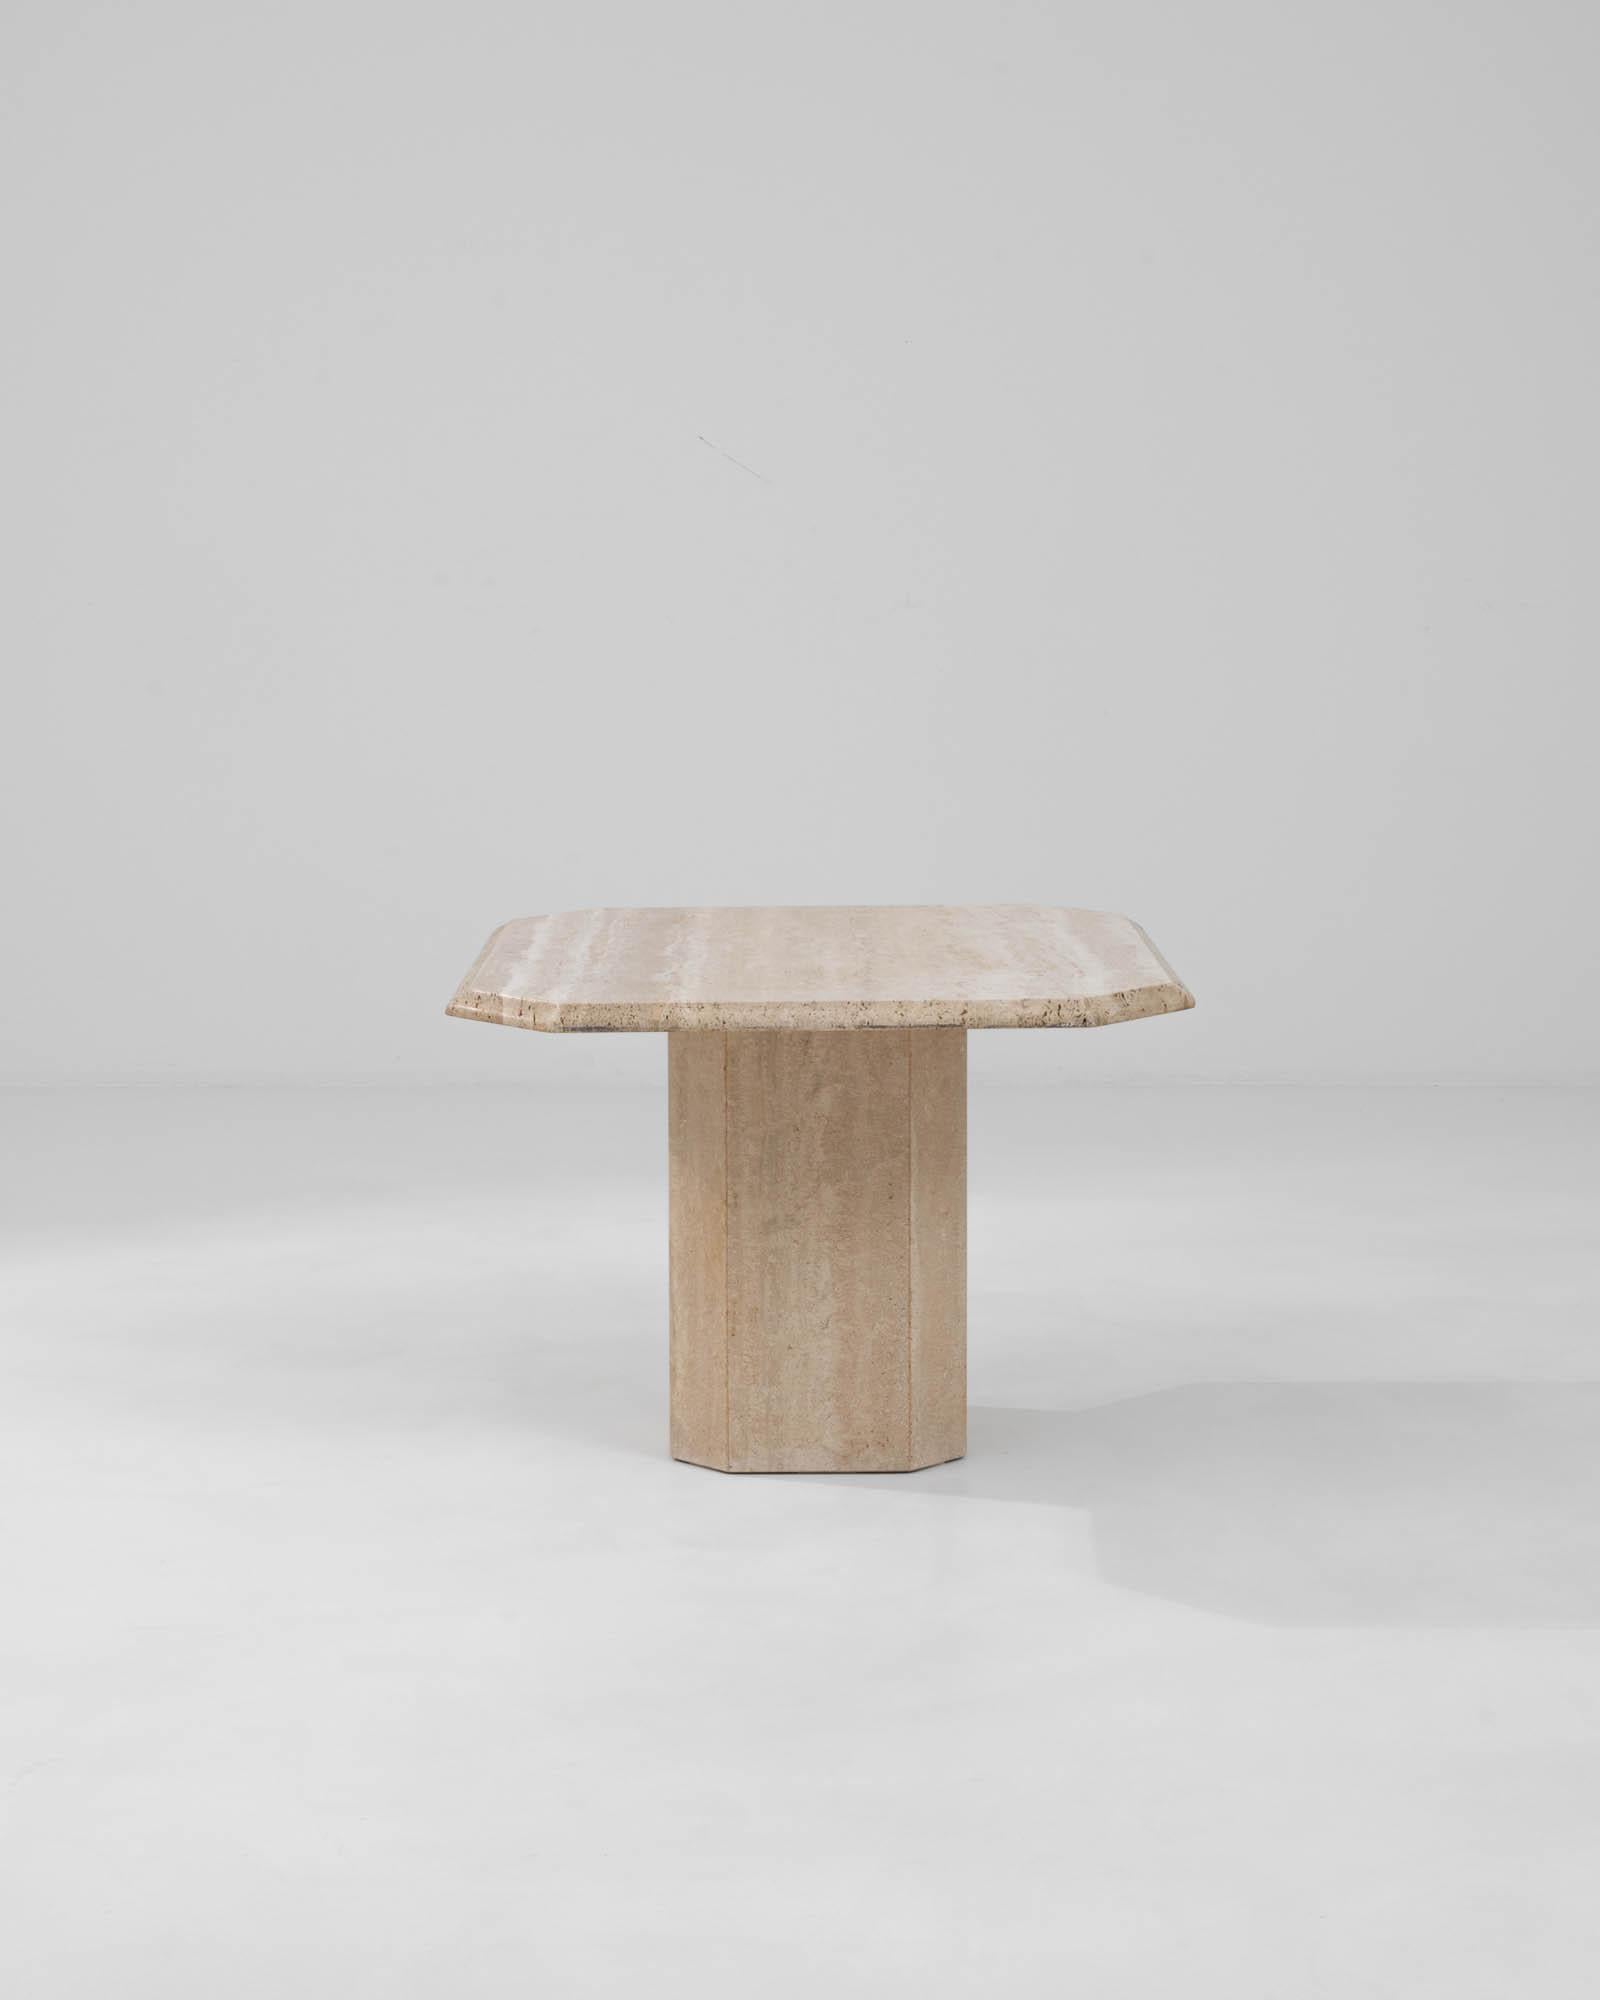 Voici la table basse en marbre italien du 20e siècle - un triomphe sculptural qui apporte le luxe et l'attrait intemporel du design italien dans votre salon. Fabriquée à partir d'un seul bloc de marbre, cette table incarne l'éthique minimaliste avec